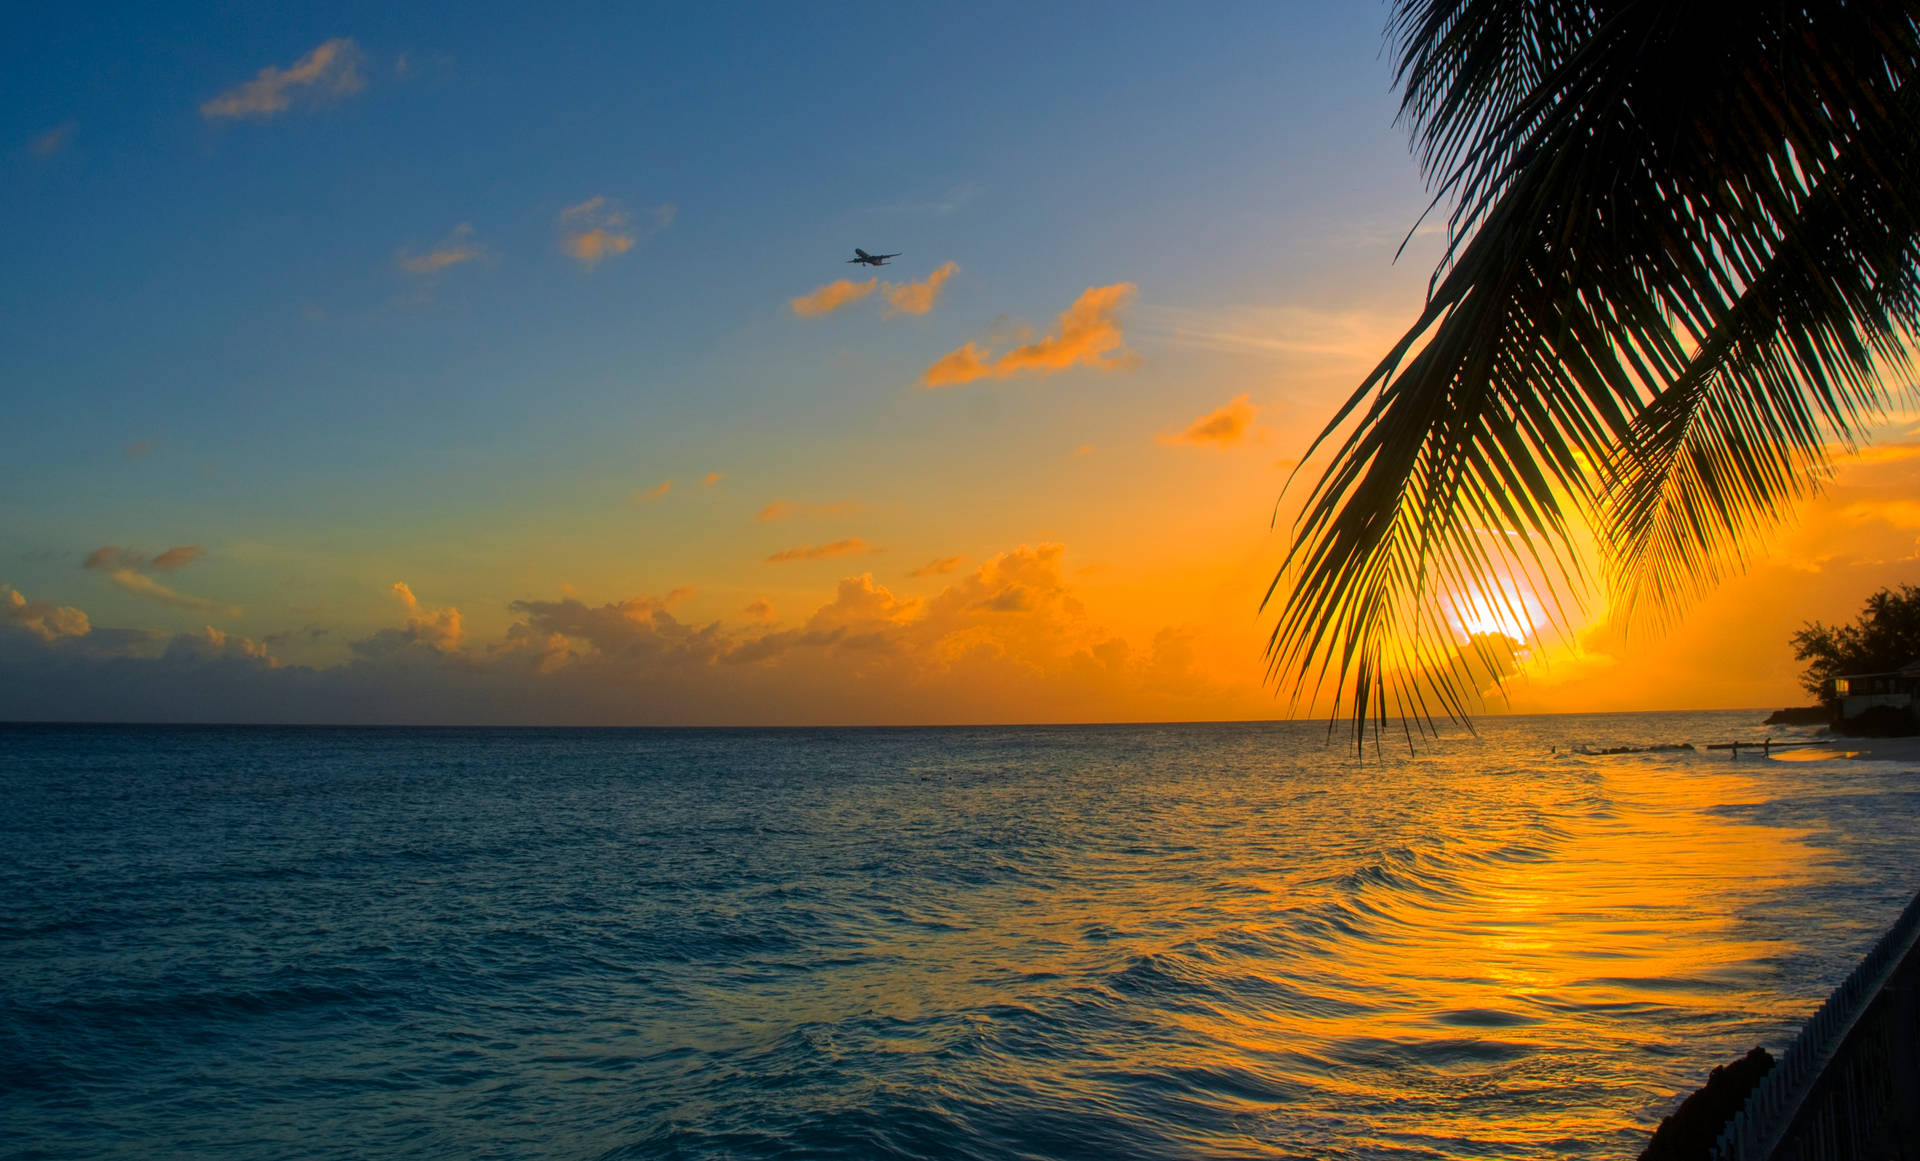 Enjoying a beautiful sunset over the calm oceans Wallpaper